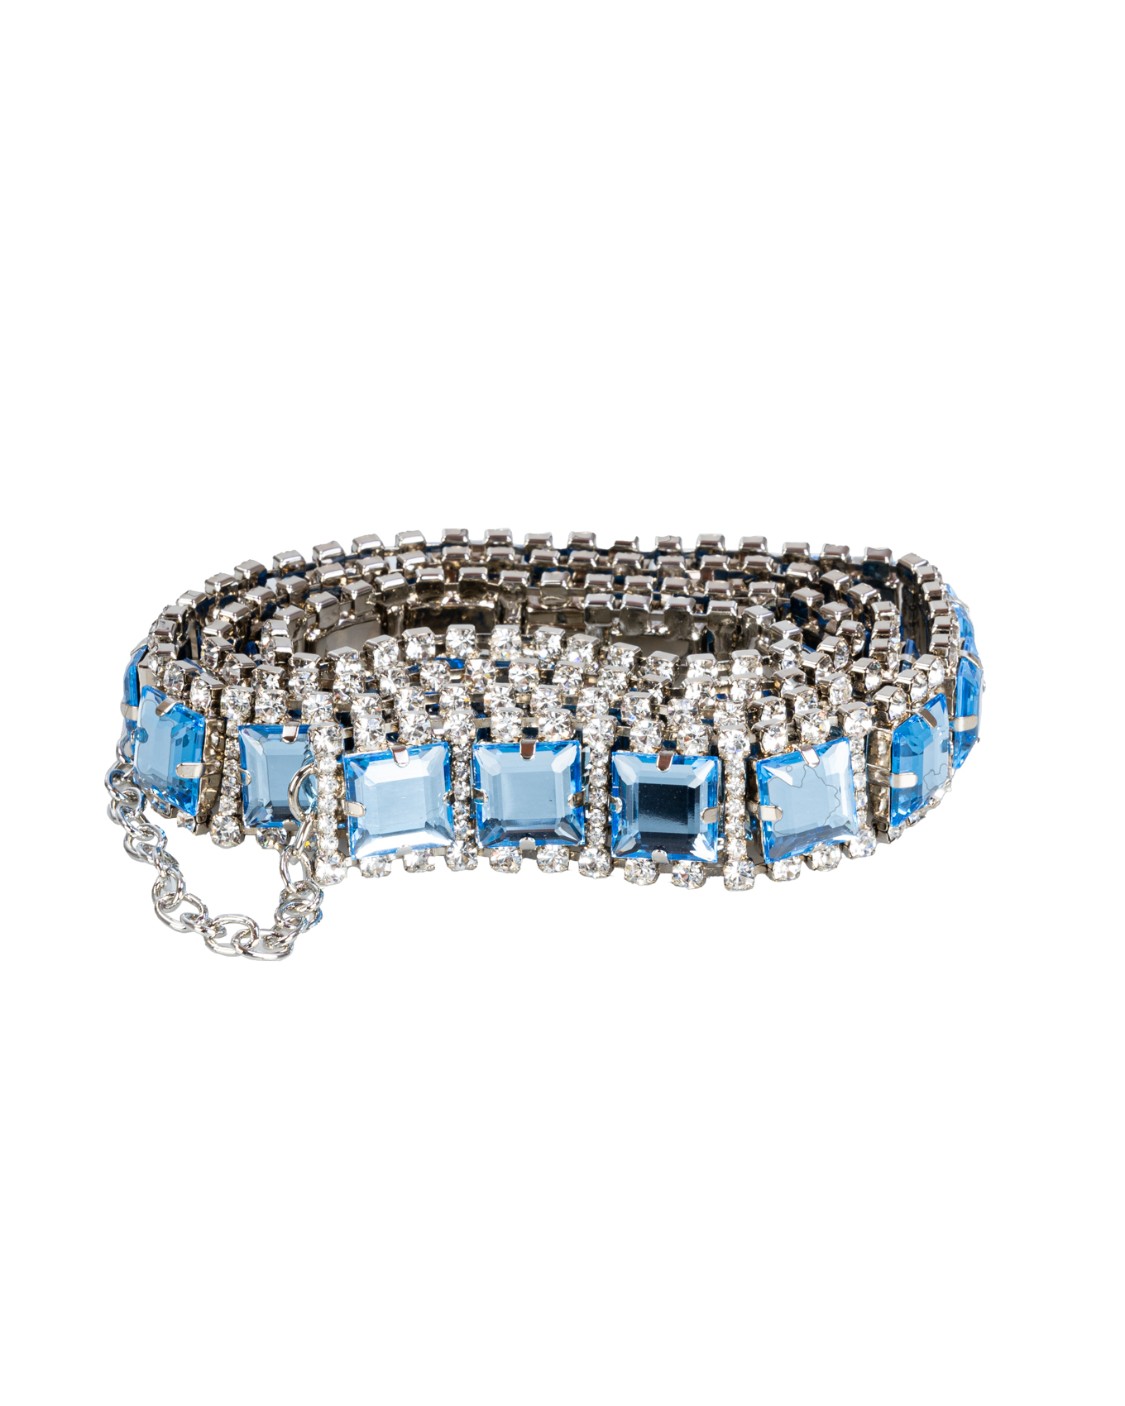 shop ORCIANI  Cintura: Orciani Cintura gioiello Smart Crystal.
Altezza 3.
Composizione: 100% cristallo.
Fabbricato in Italia.. D10267 SYL-ACQUA number 9880253